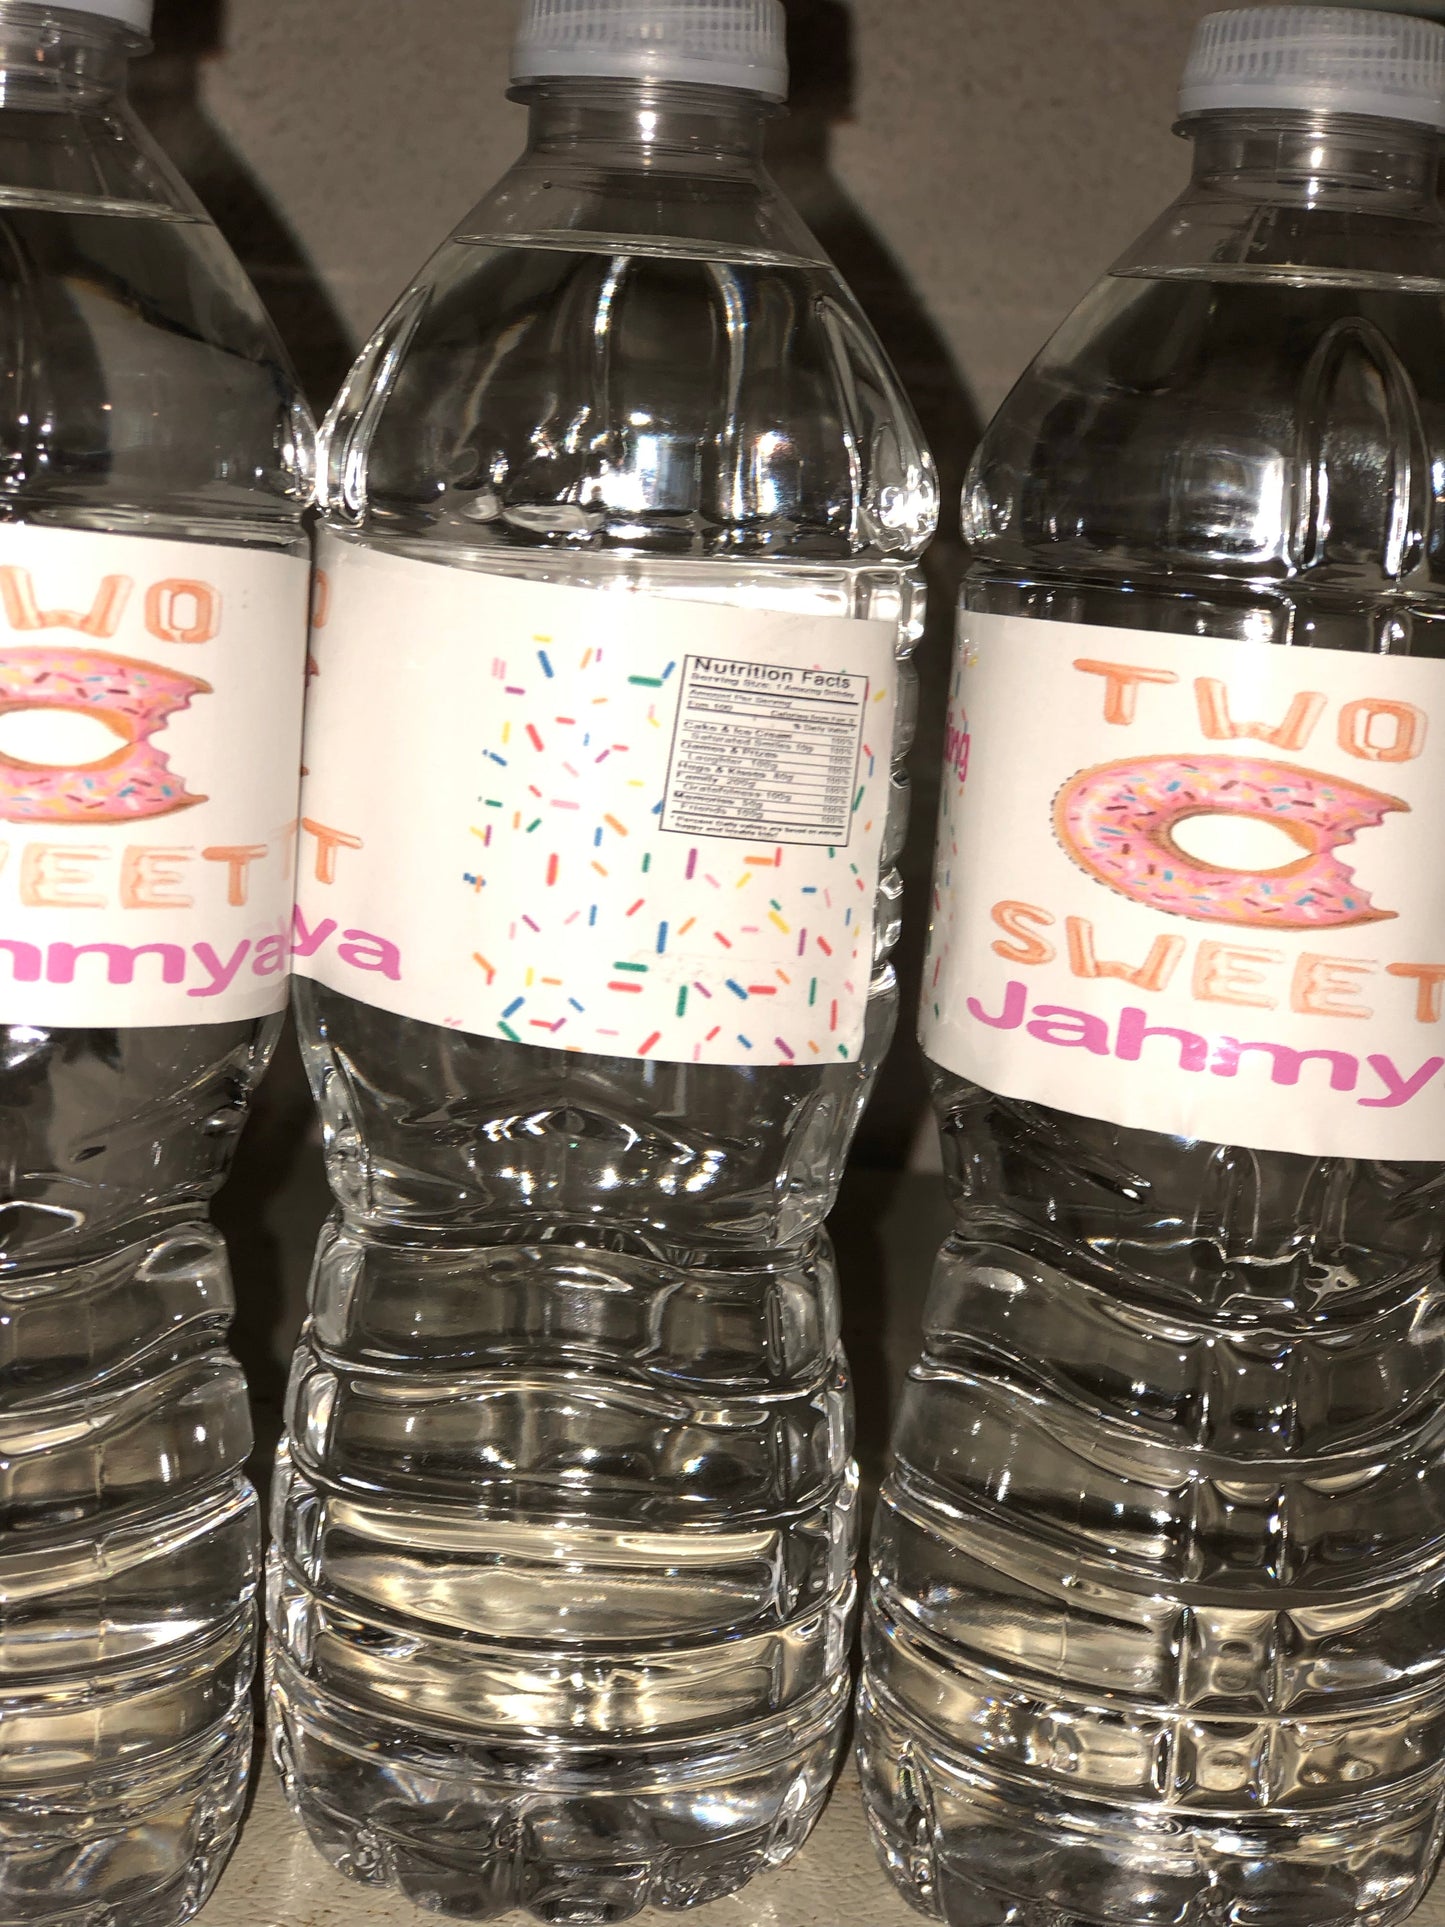 Water bottle labels